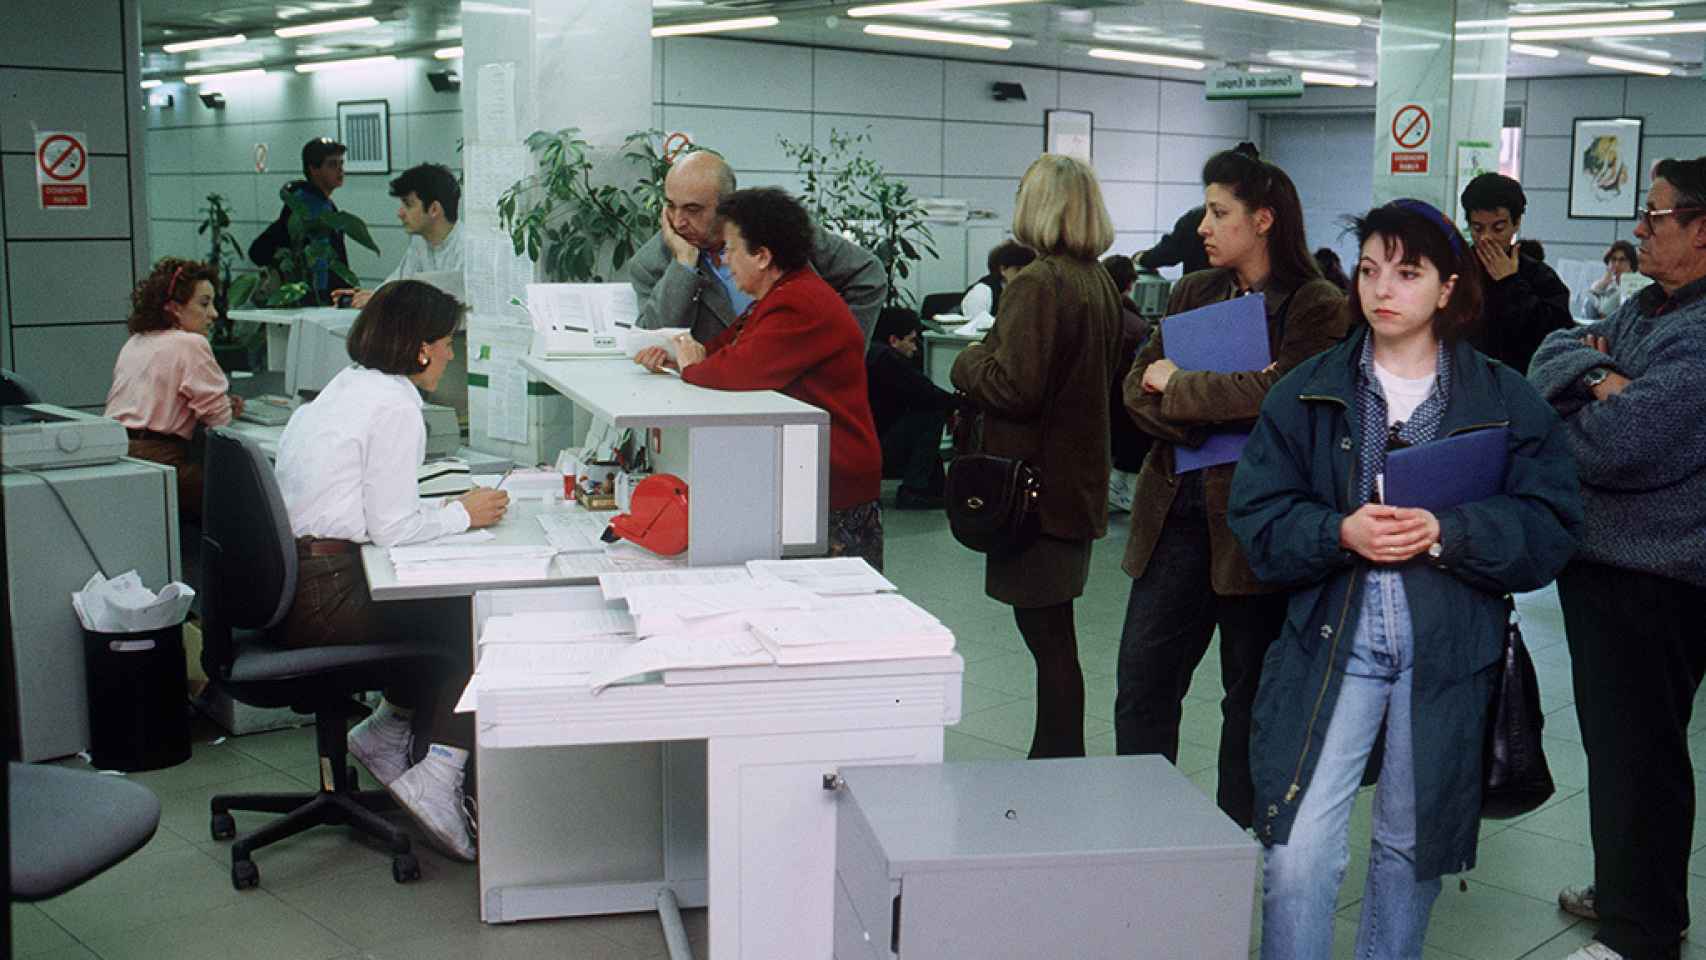 Oficina de solicitud de empleo, en una imagen de archivo.